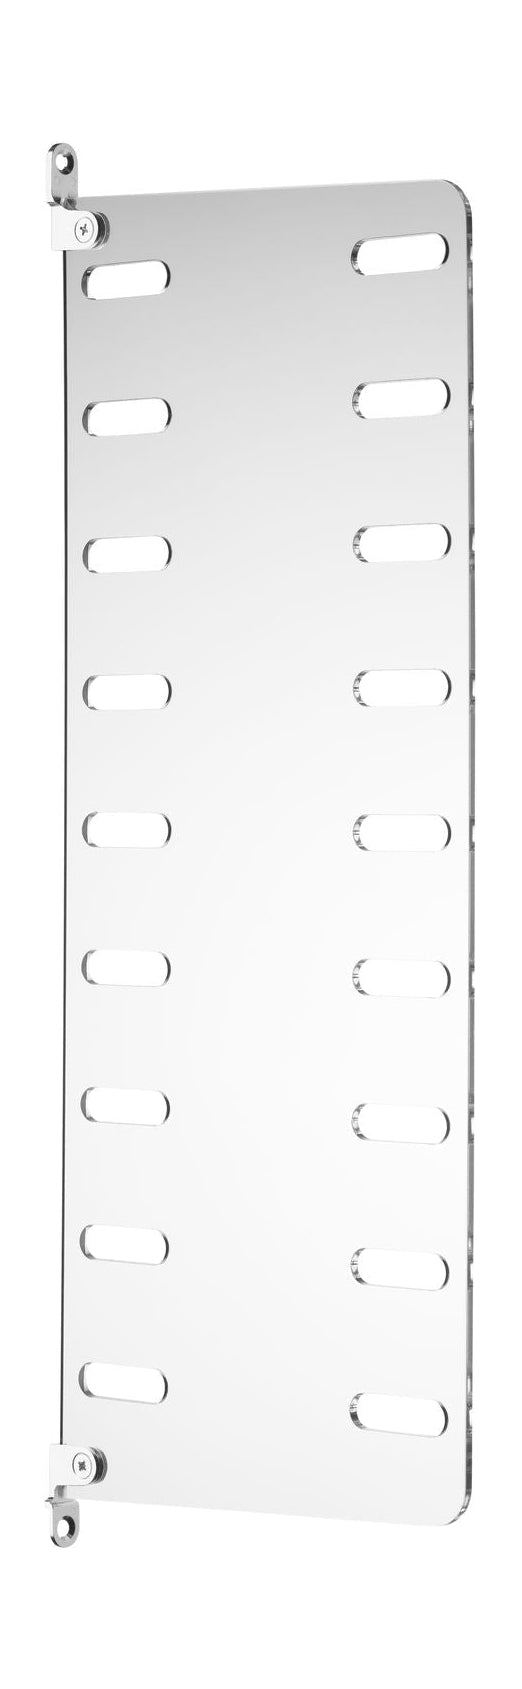 String nábytek String System Plex boční panel namontován na stěně, 20x50 cm